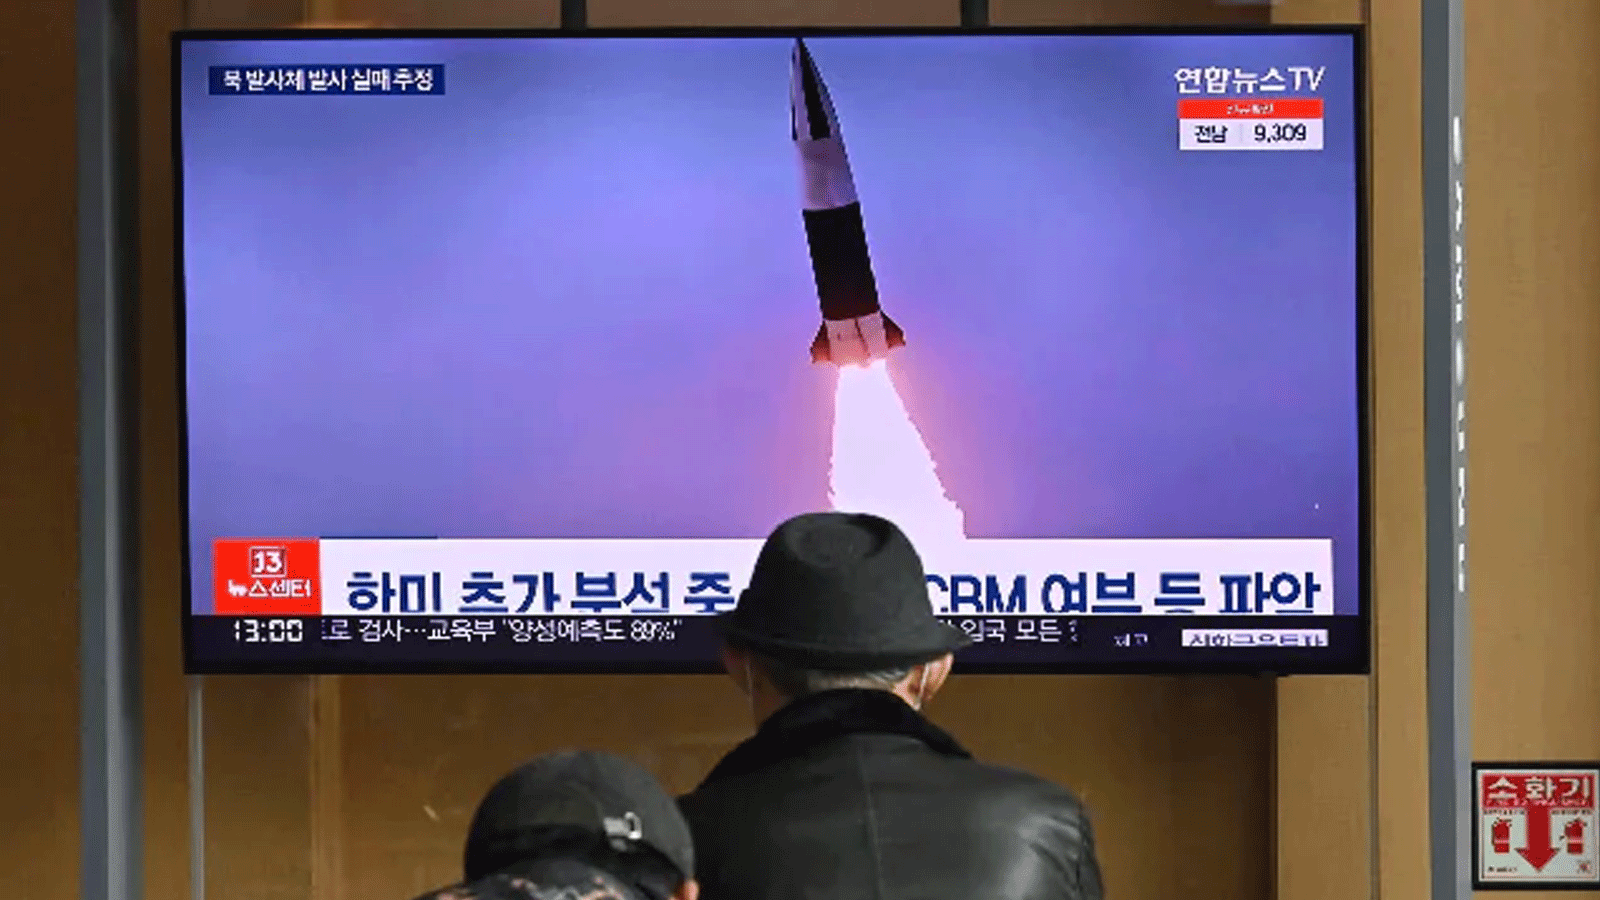 مواطنون كوريون يشاهدون إطلاق صاروخ تجريبي على التلفاز